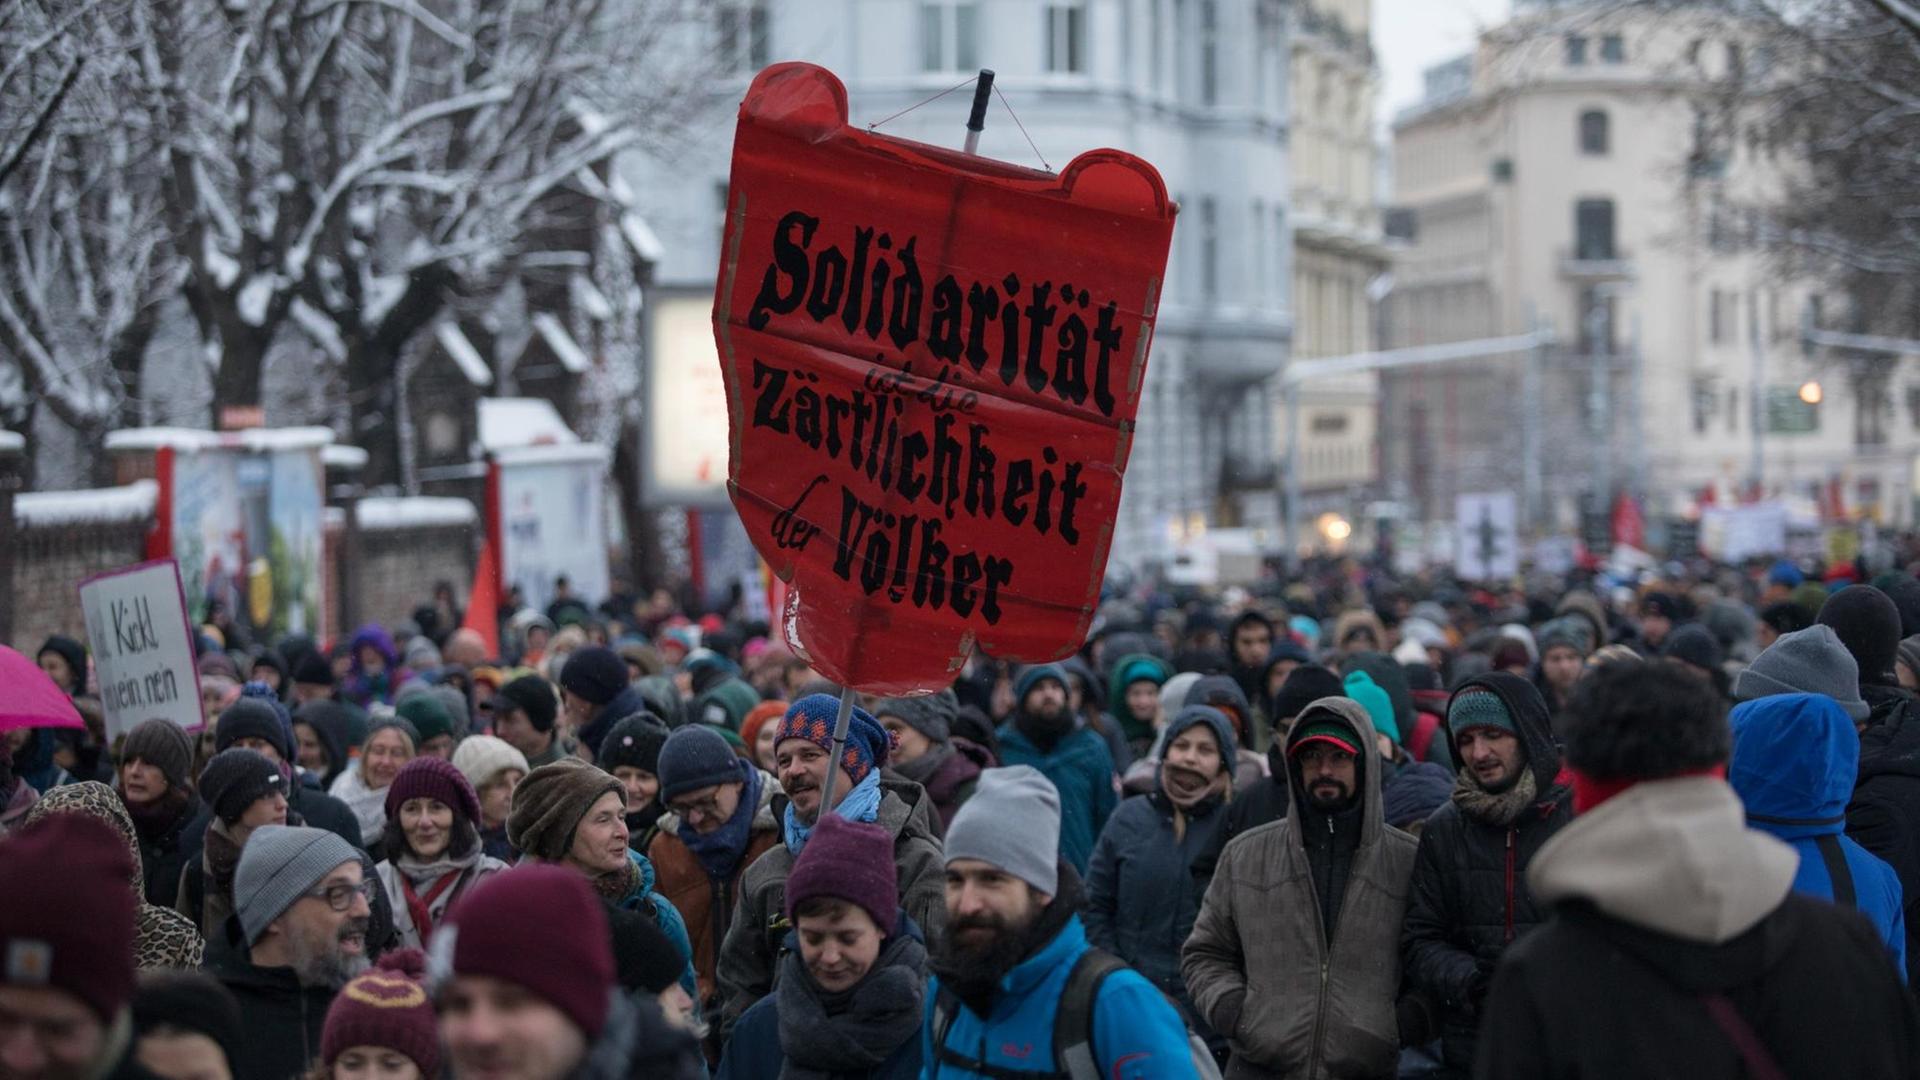 Proteste zum 1. Jahrestag der Regierungsbildung von ÖVP und FPÖ in Wien. Eine Menschenmenge in einem verschneiten Straßenzug, ein Mann hält ein rotes Transparent mit der Aufschrift: "Solidarität ist die Zärtlichkeit der Völker" hoch.